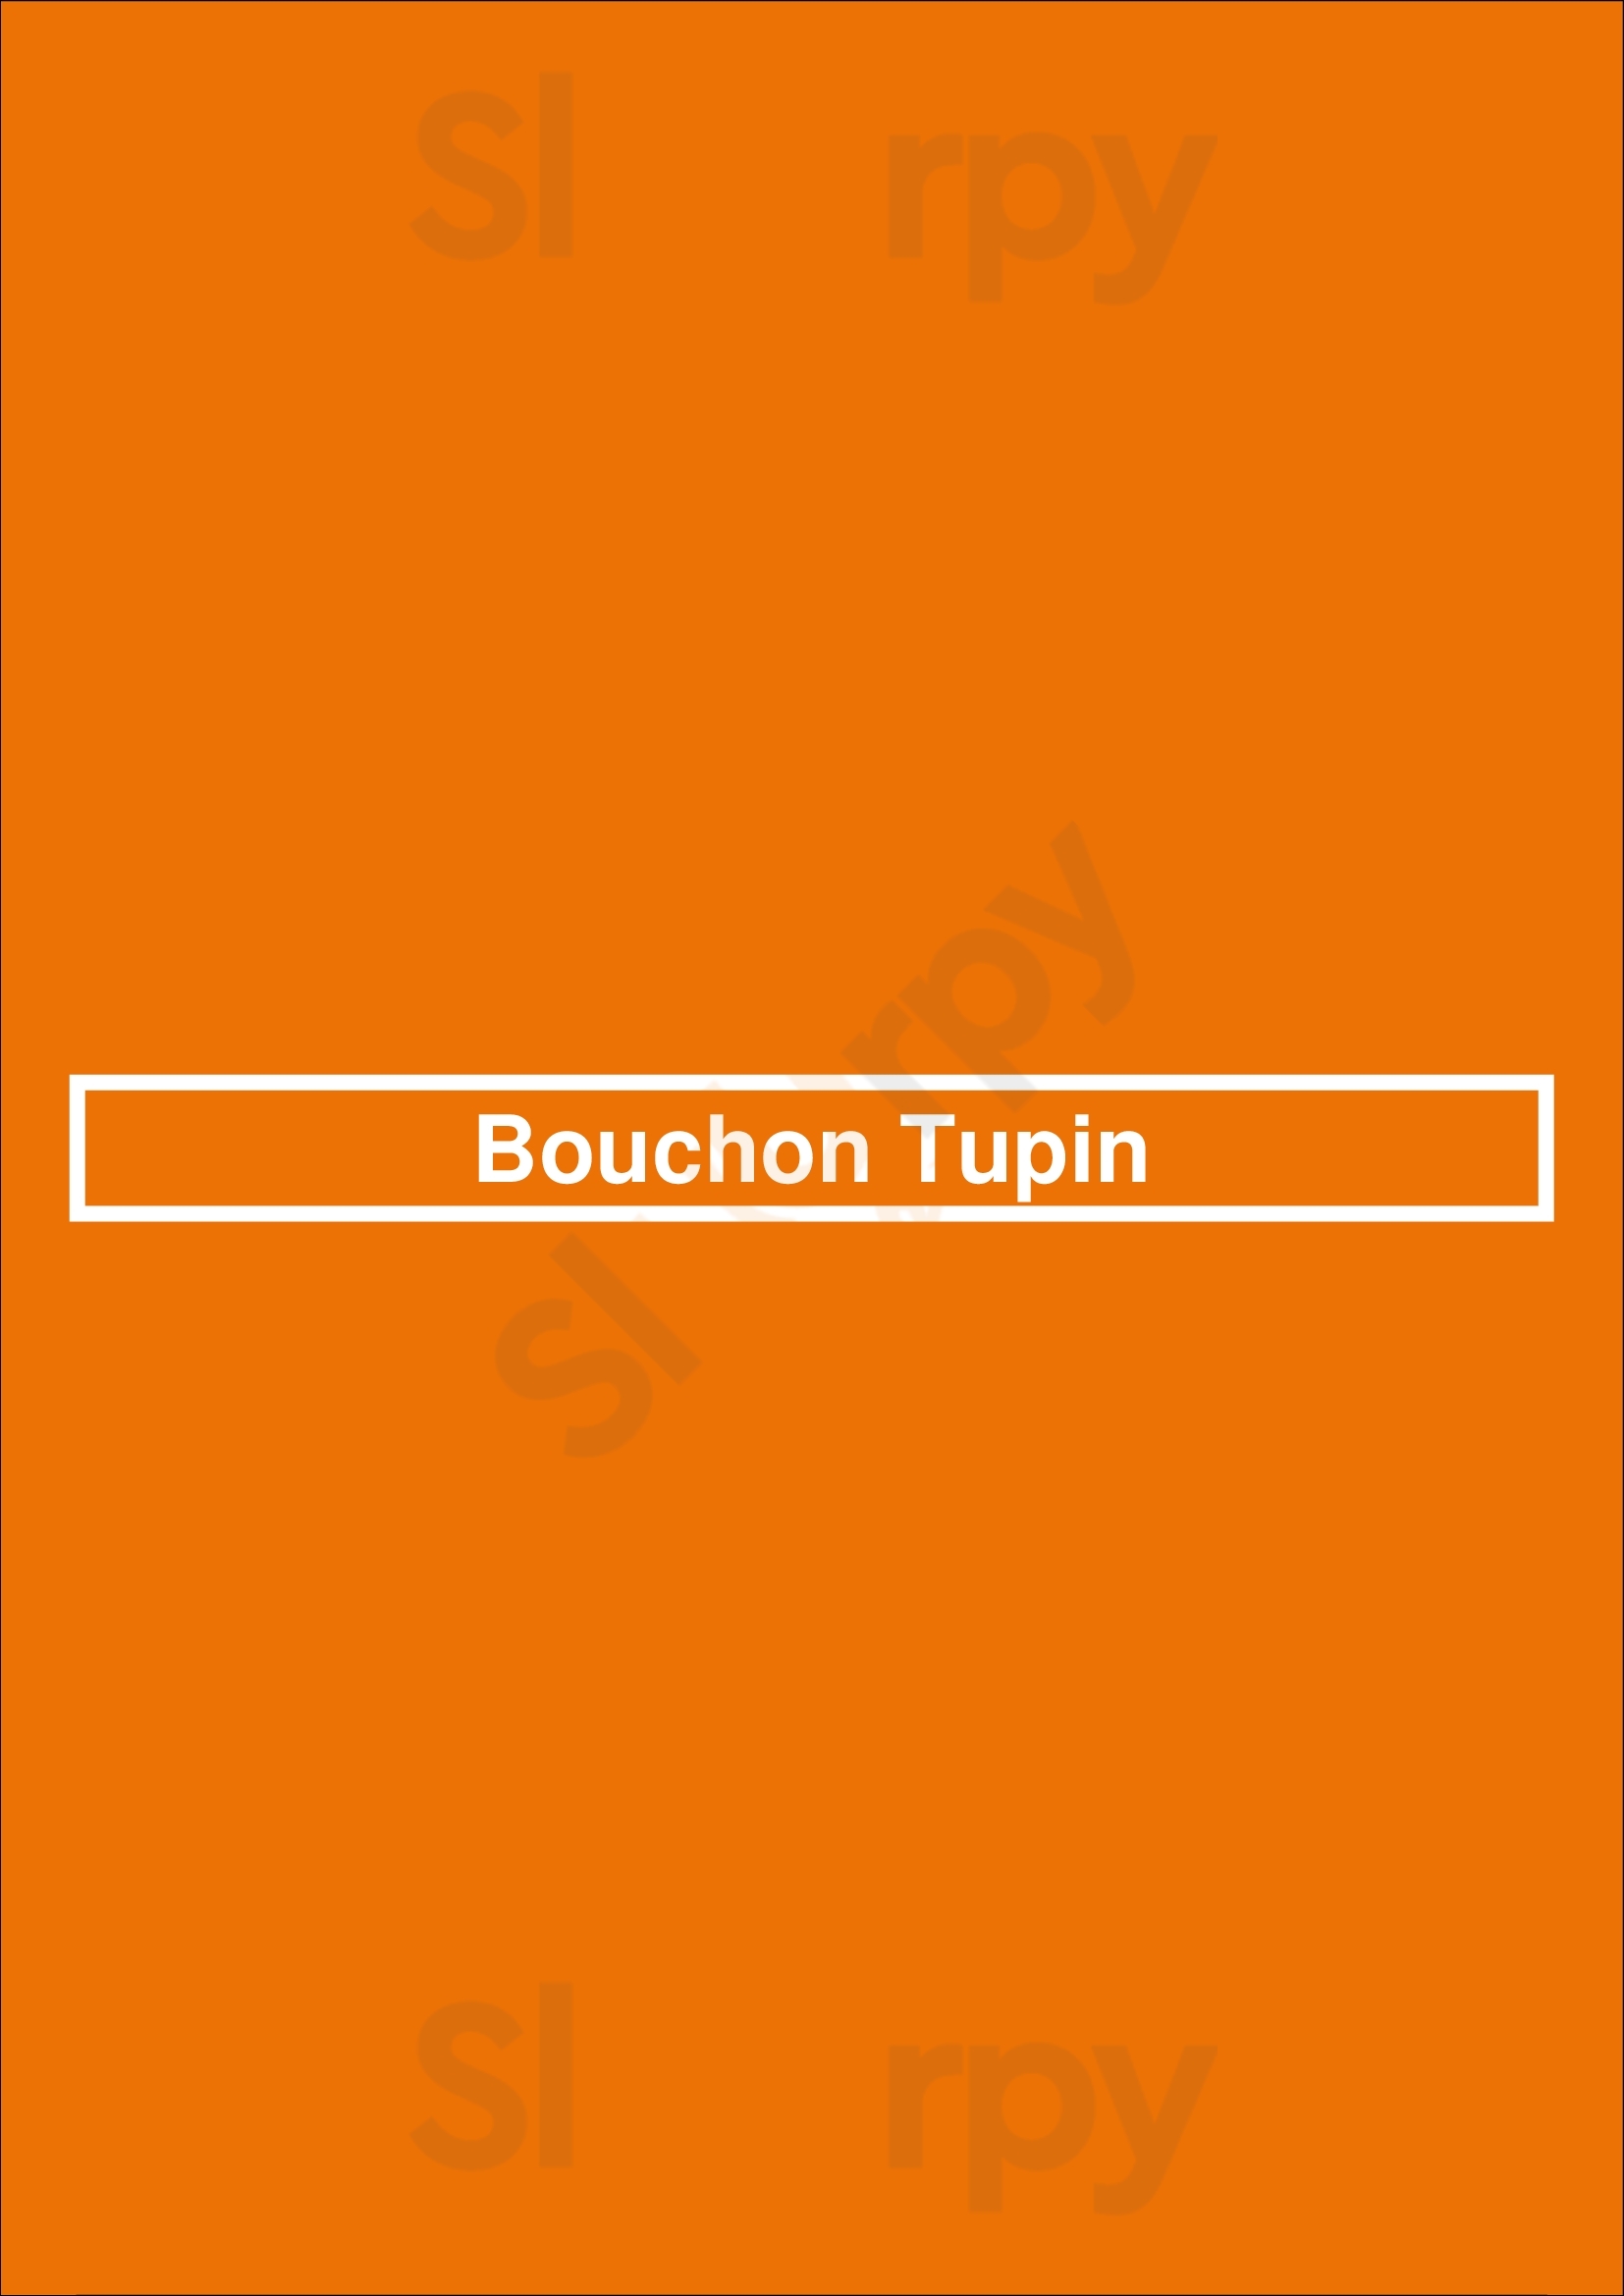 Bouchon Tupin Lyon Menu - 1